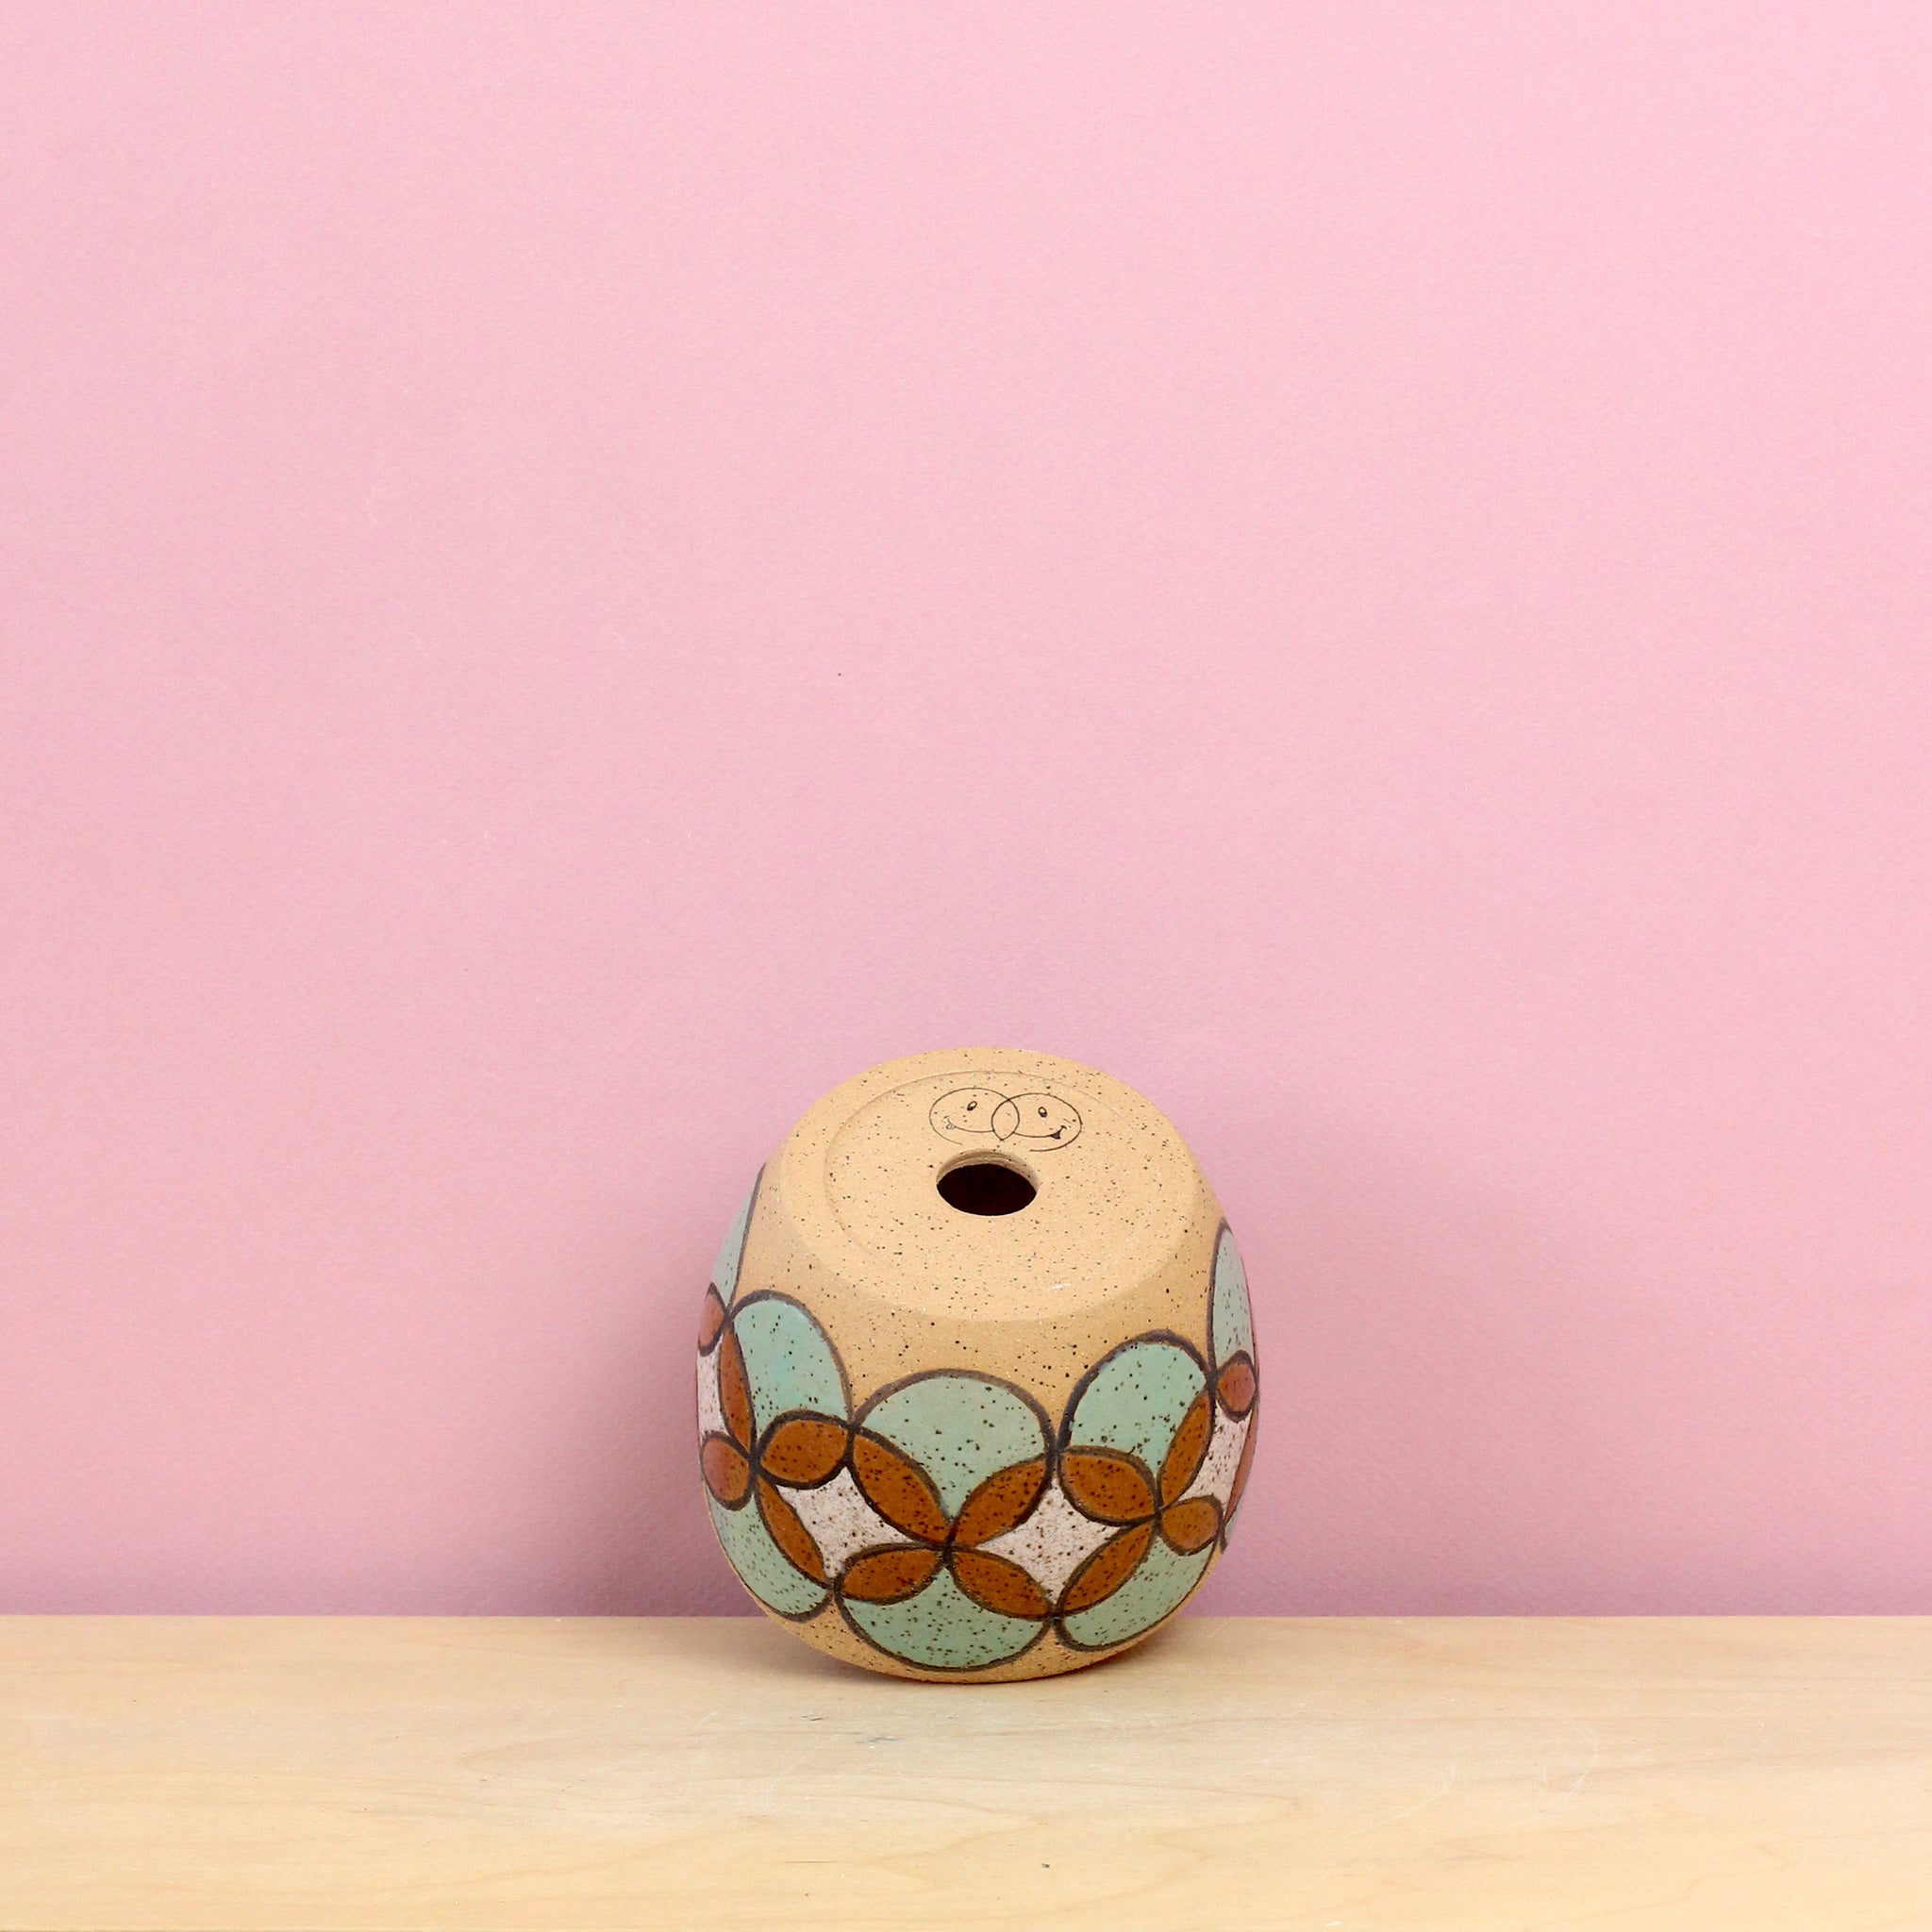 Glazed Stoneware Pot With Circle Pattern